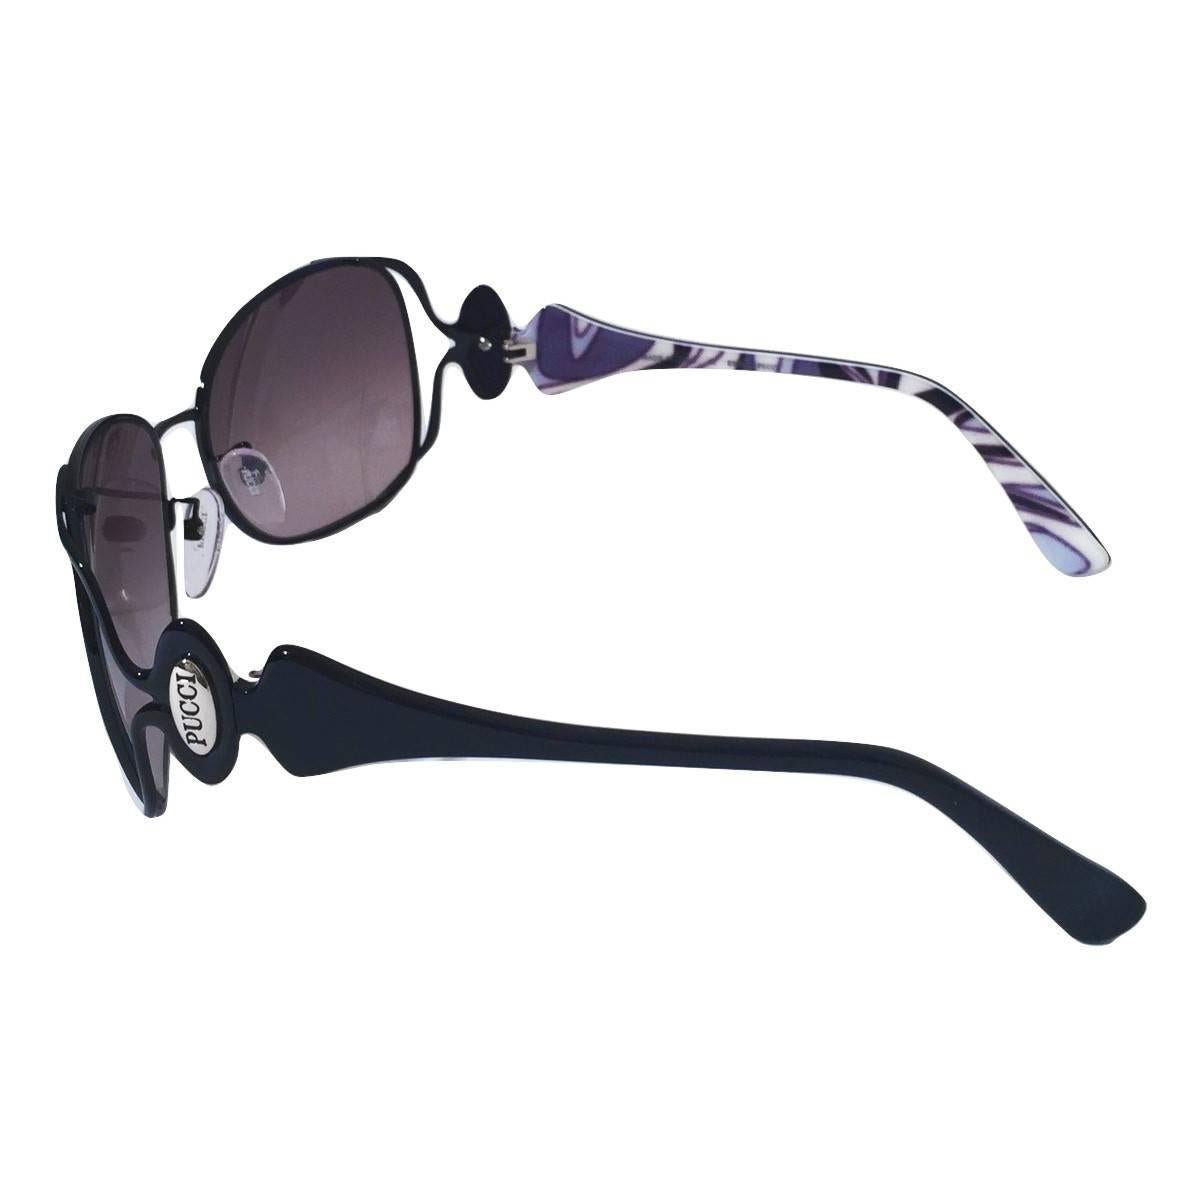 New Emilio Pucci Black Aviator Sunglasses With Case & Box 5